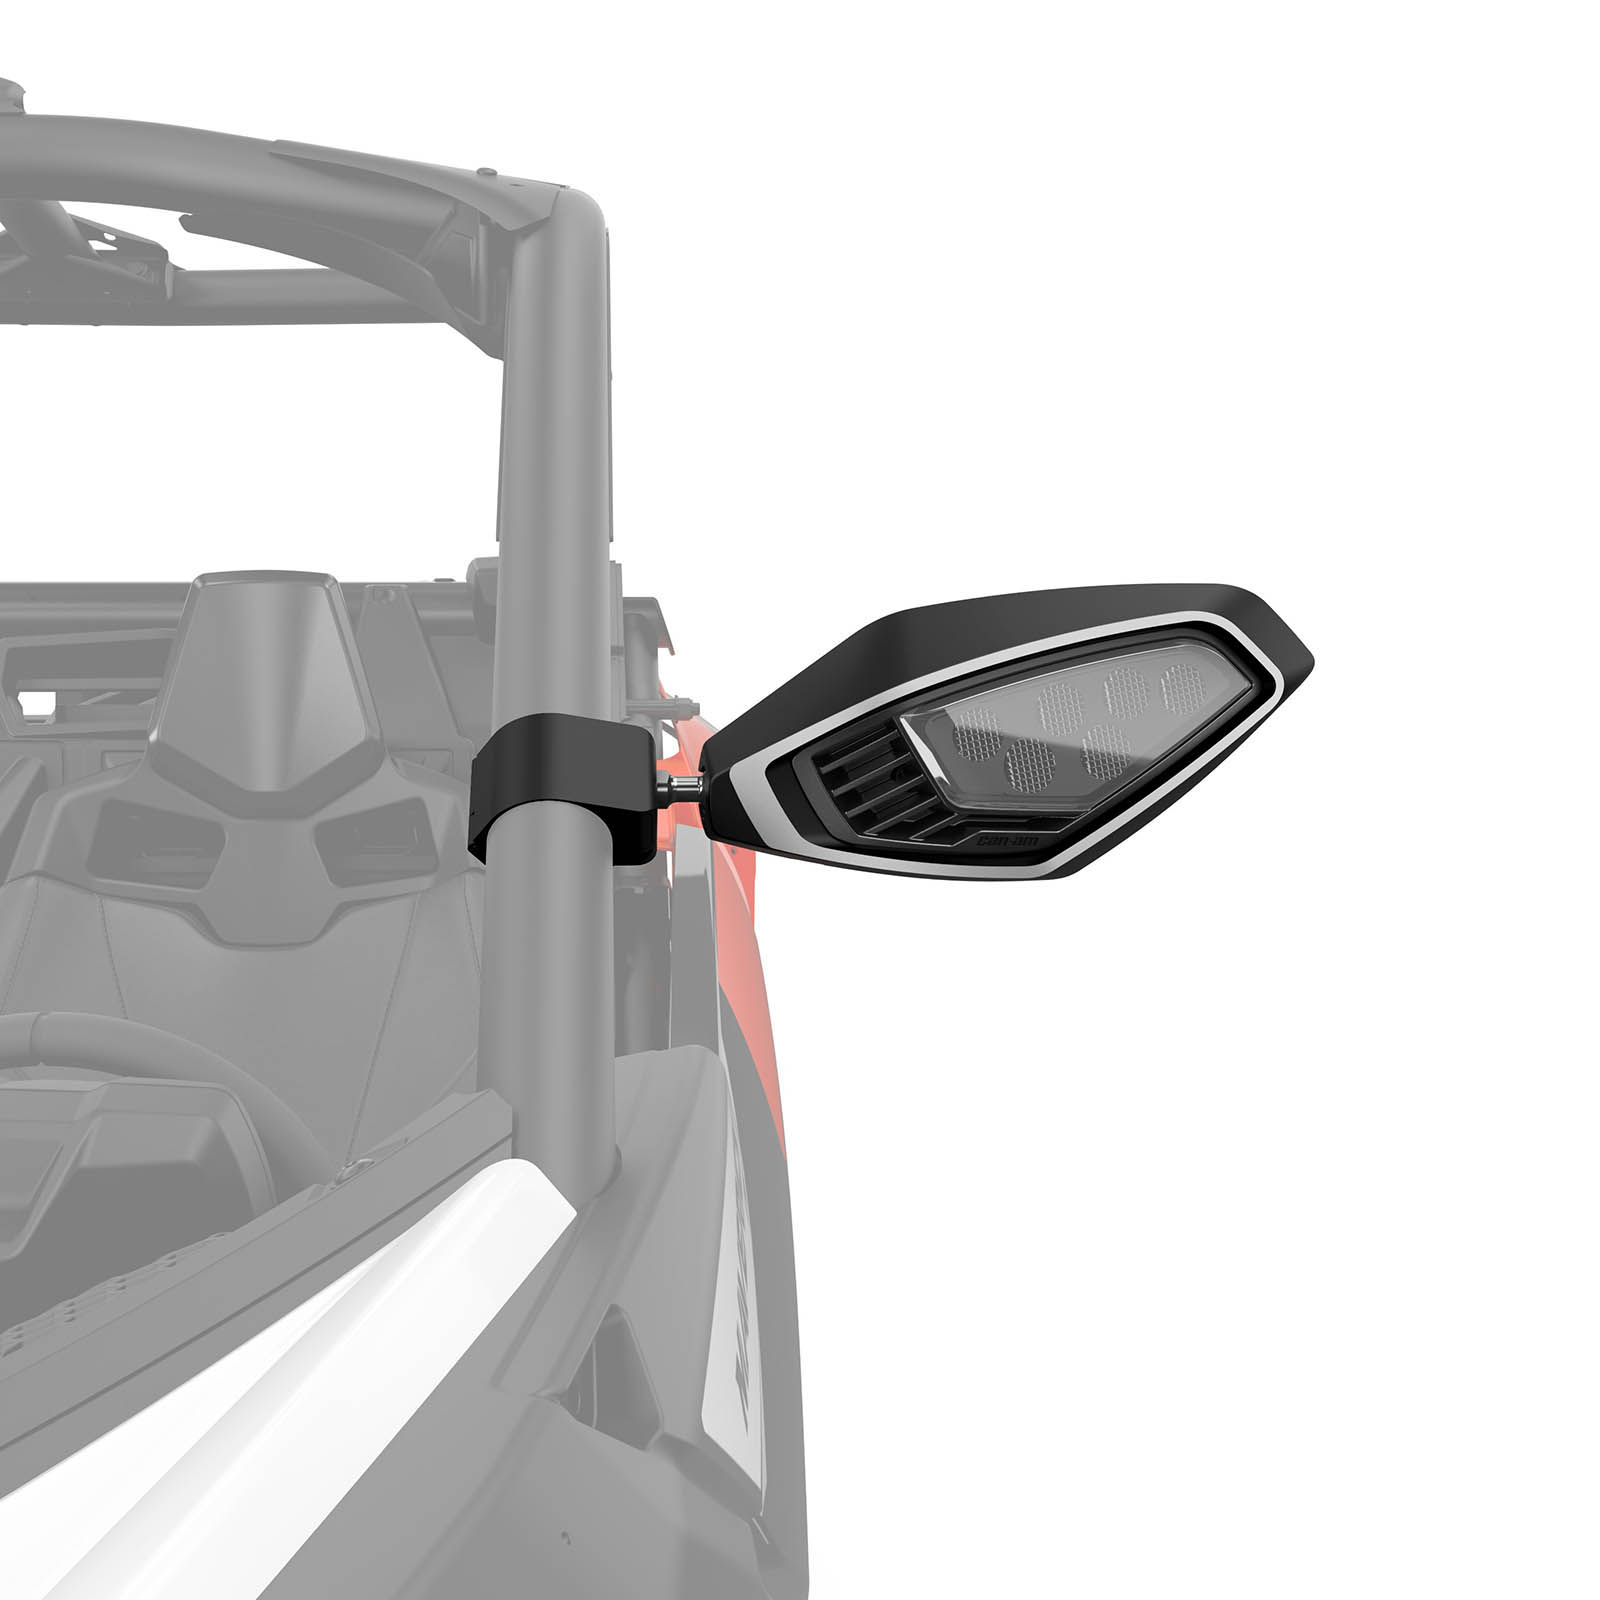 Integrierte LED-Seitenspiegelleuchten für Can-Am Side-by-Side Fahrzeuge